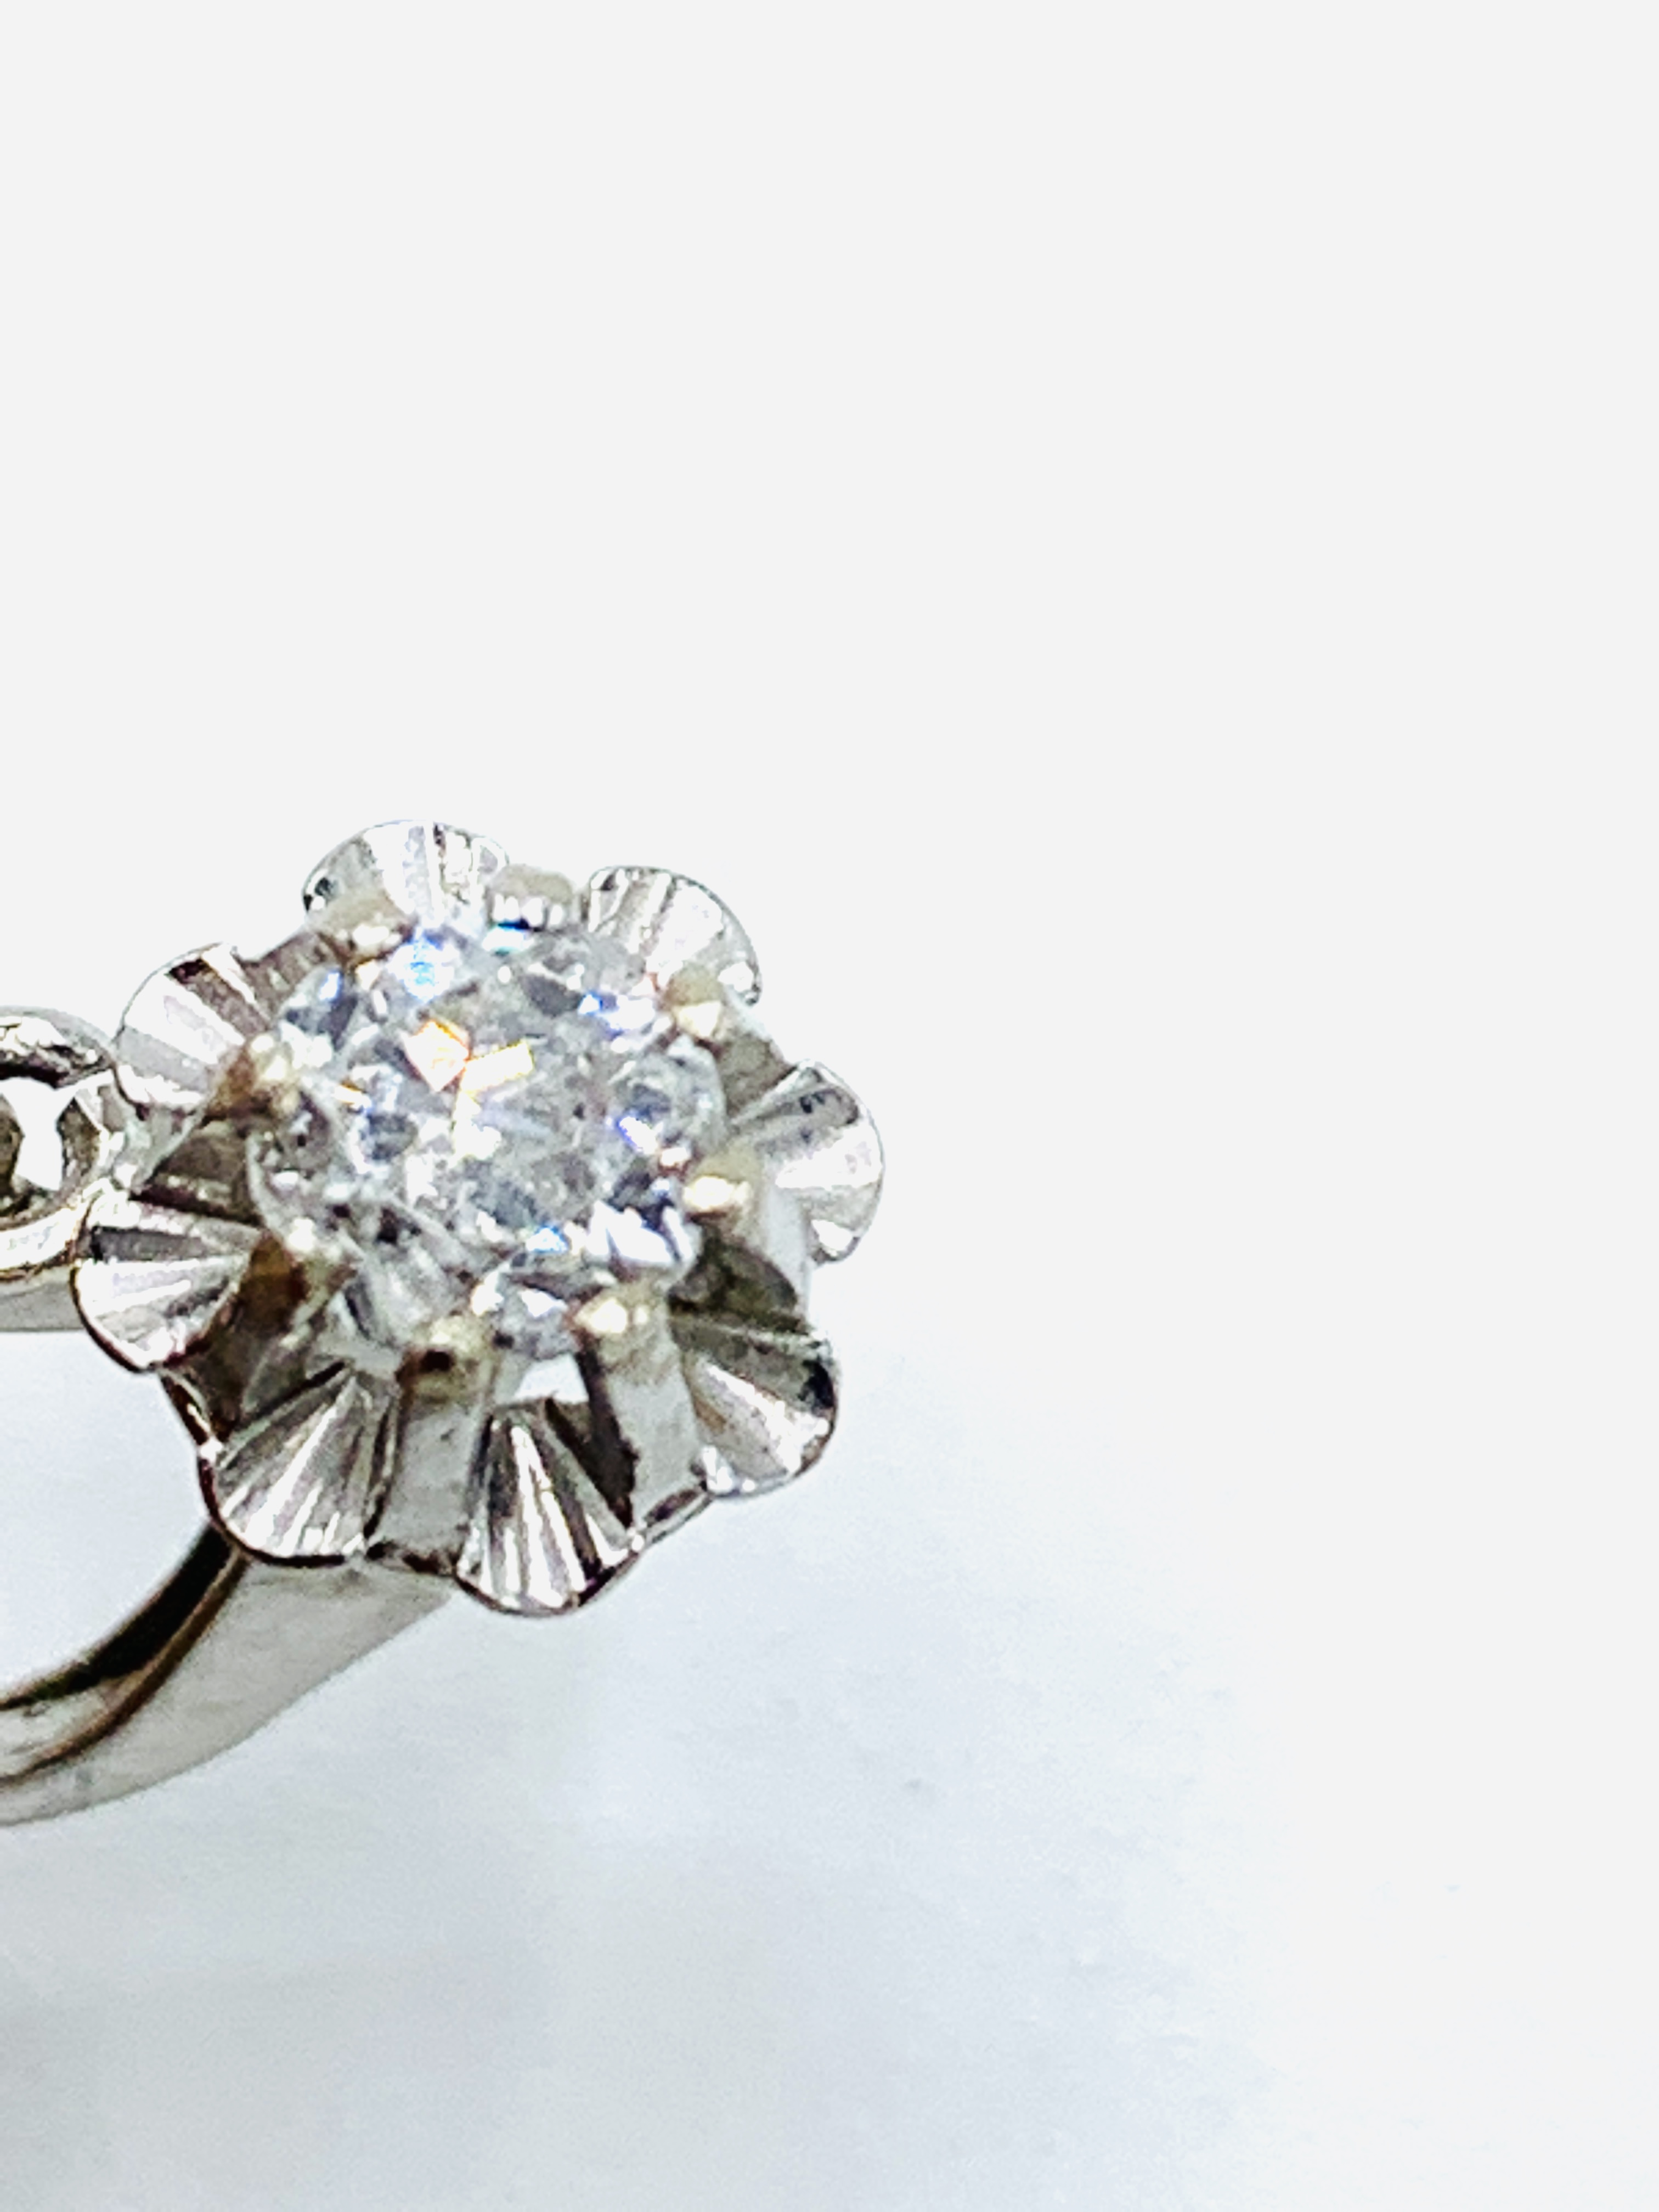 White gold diamond earrings - Image 3 of 3